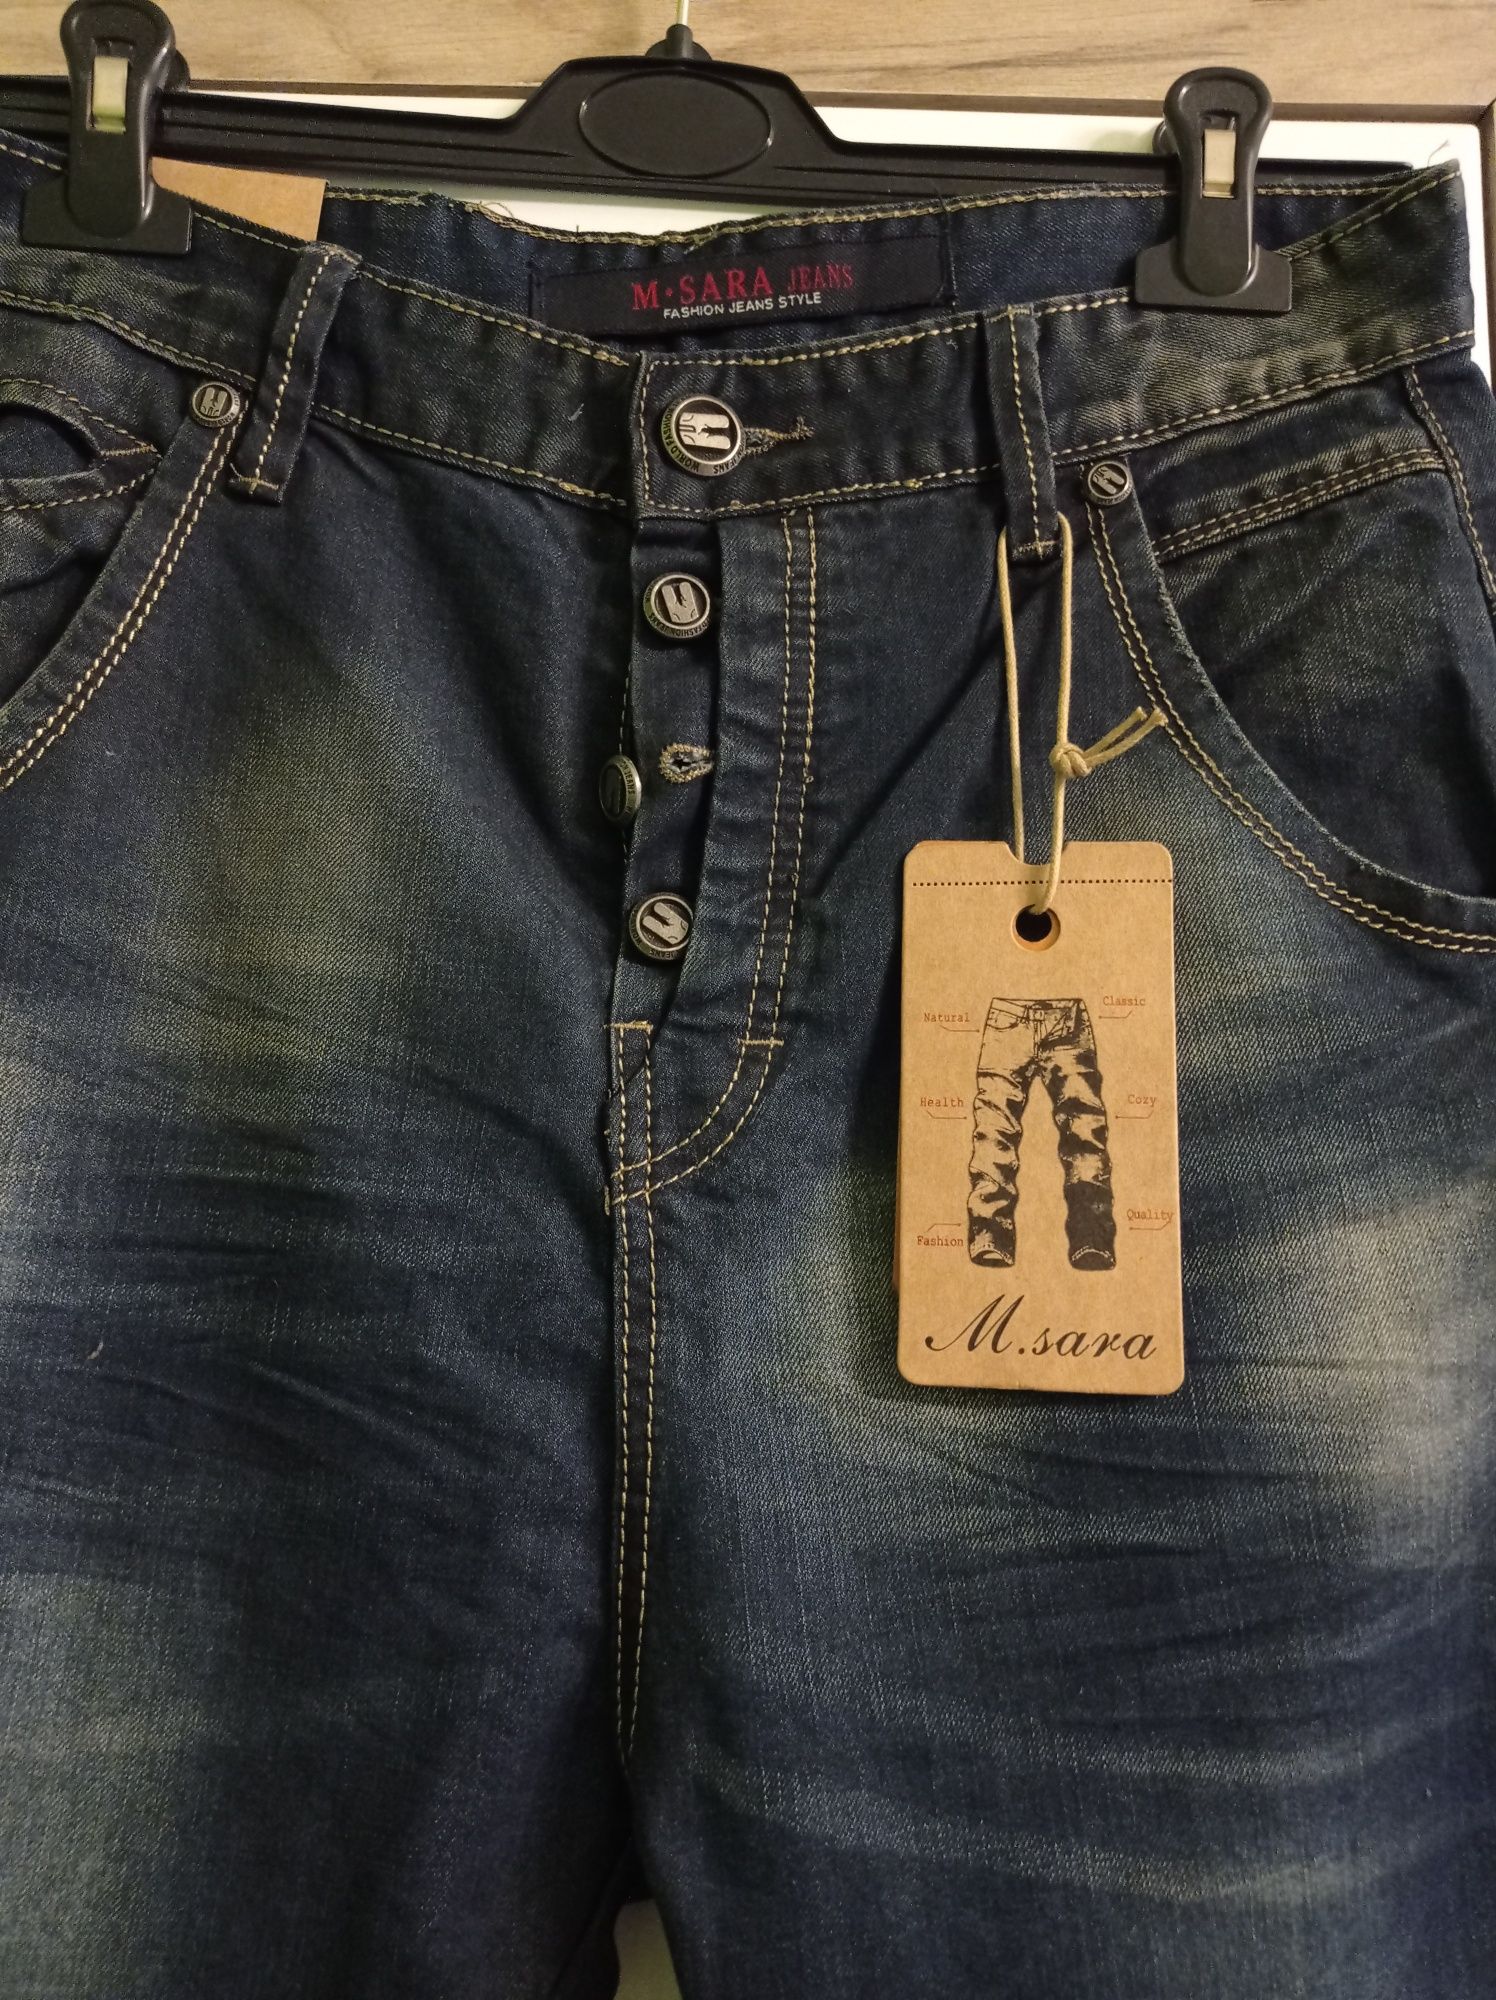 Spodnie męskie proste jeansy M Sara